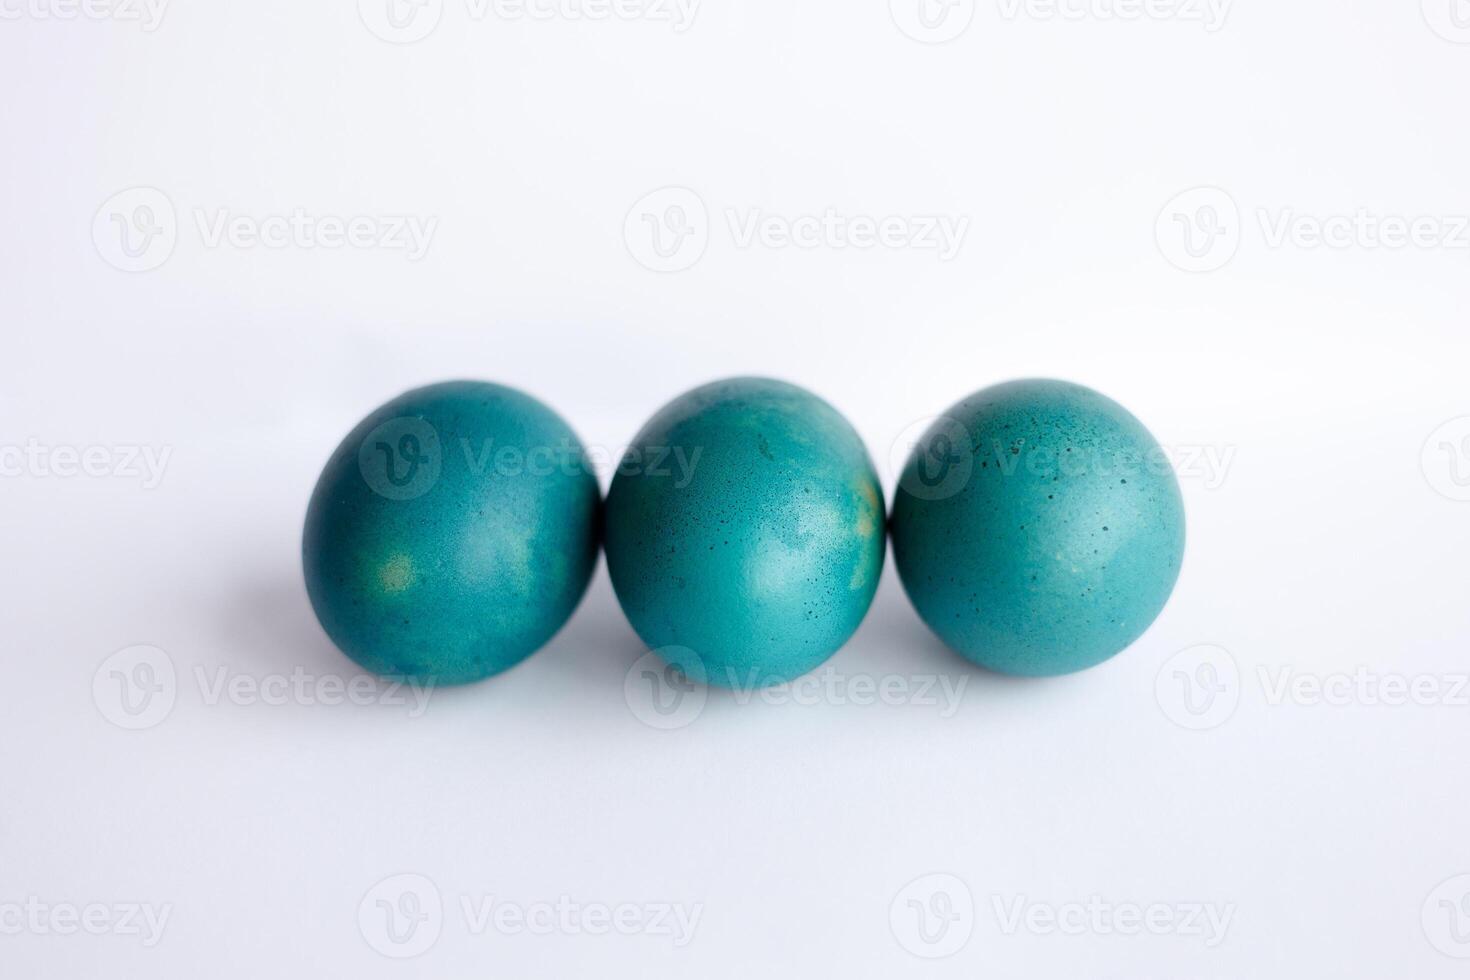 riga di ombre blu Pasqua uova isolato su bianca sfondo foto